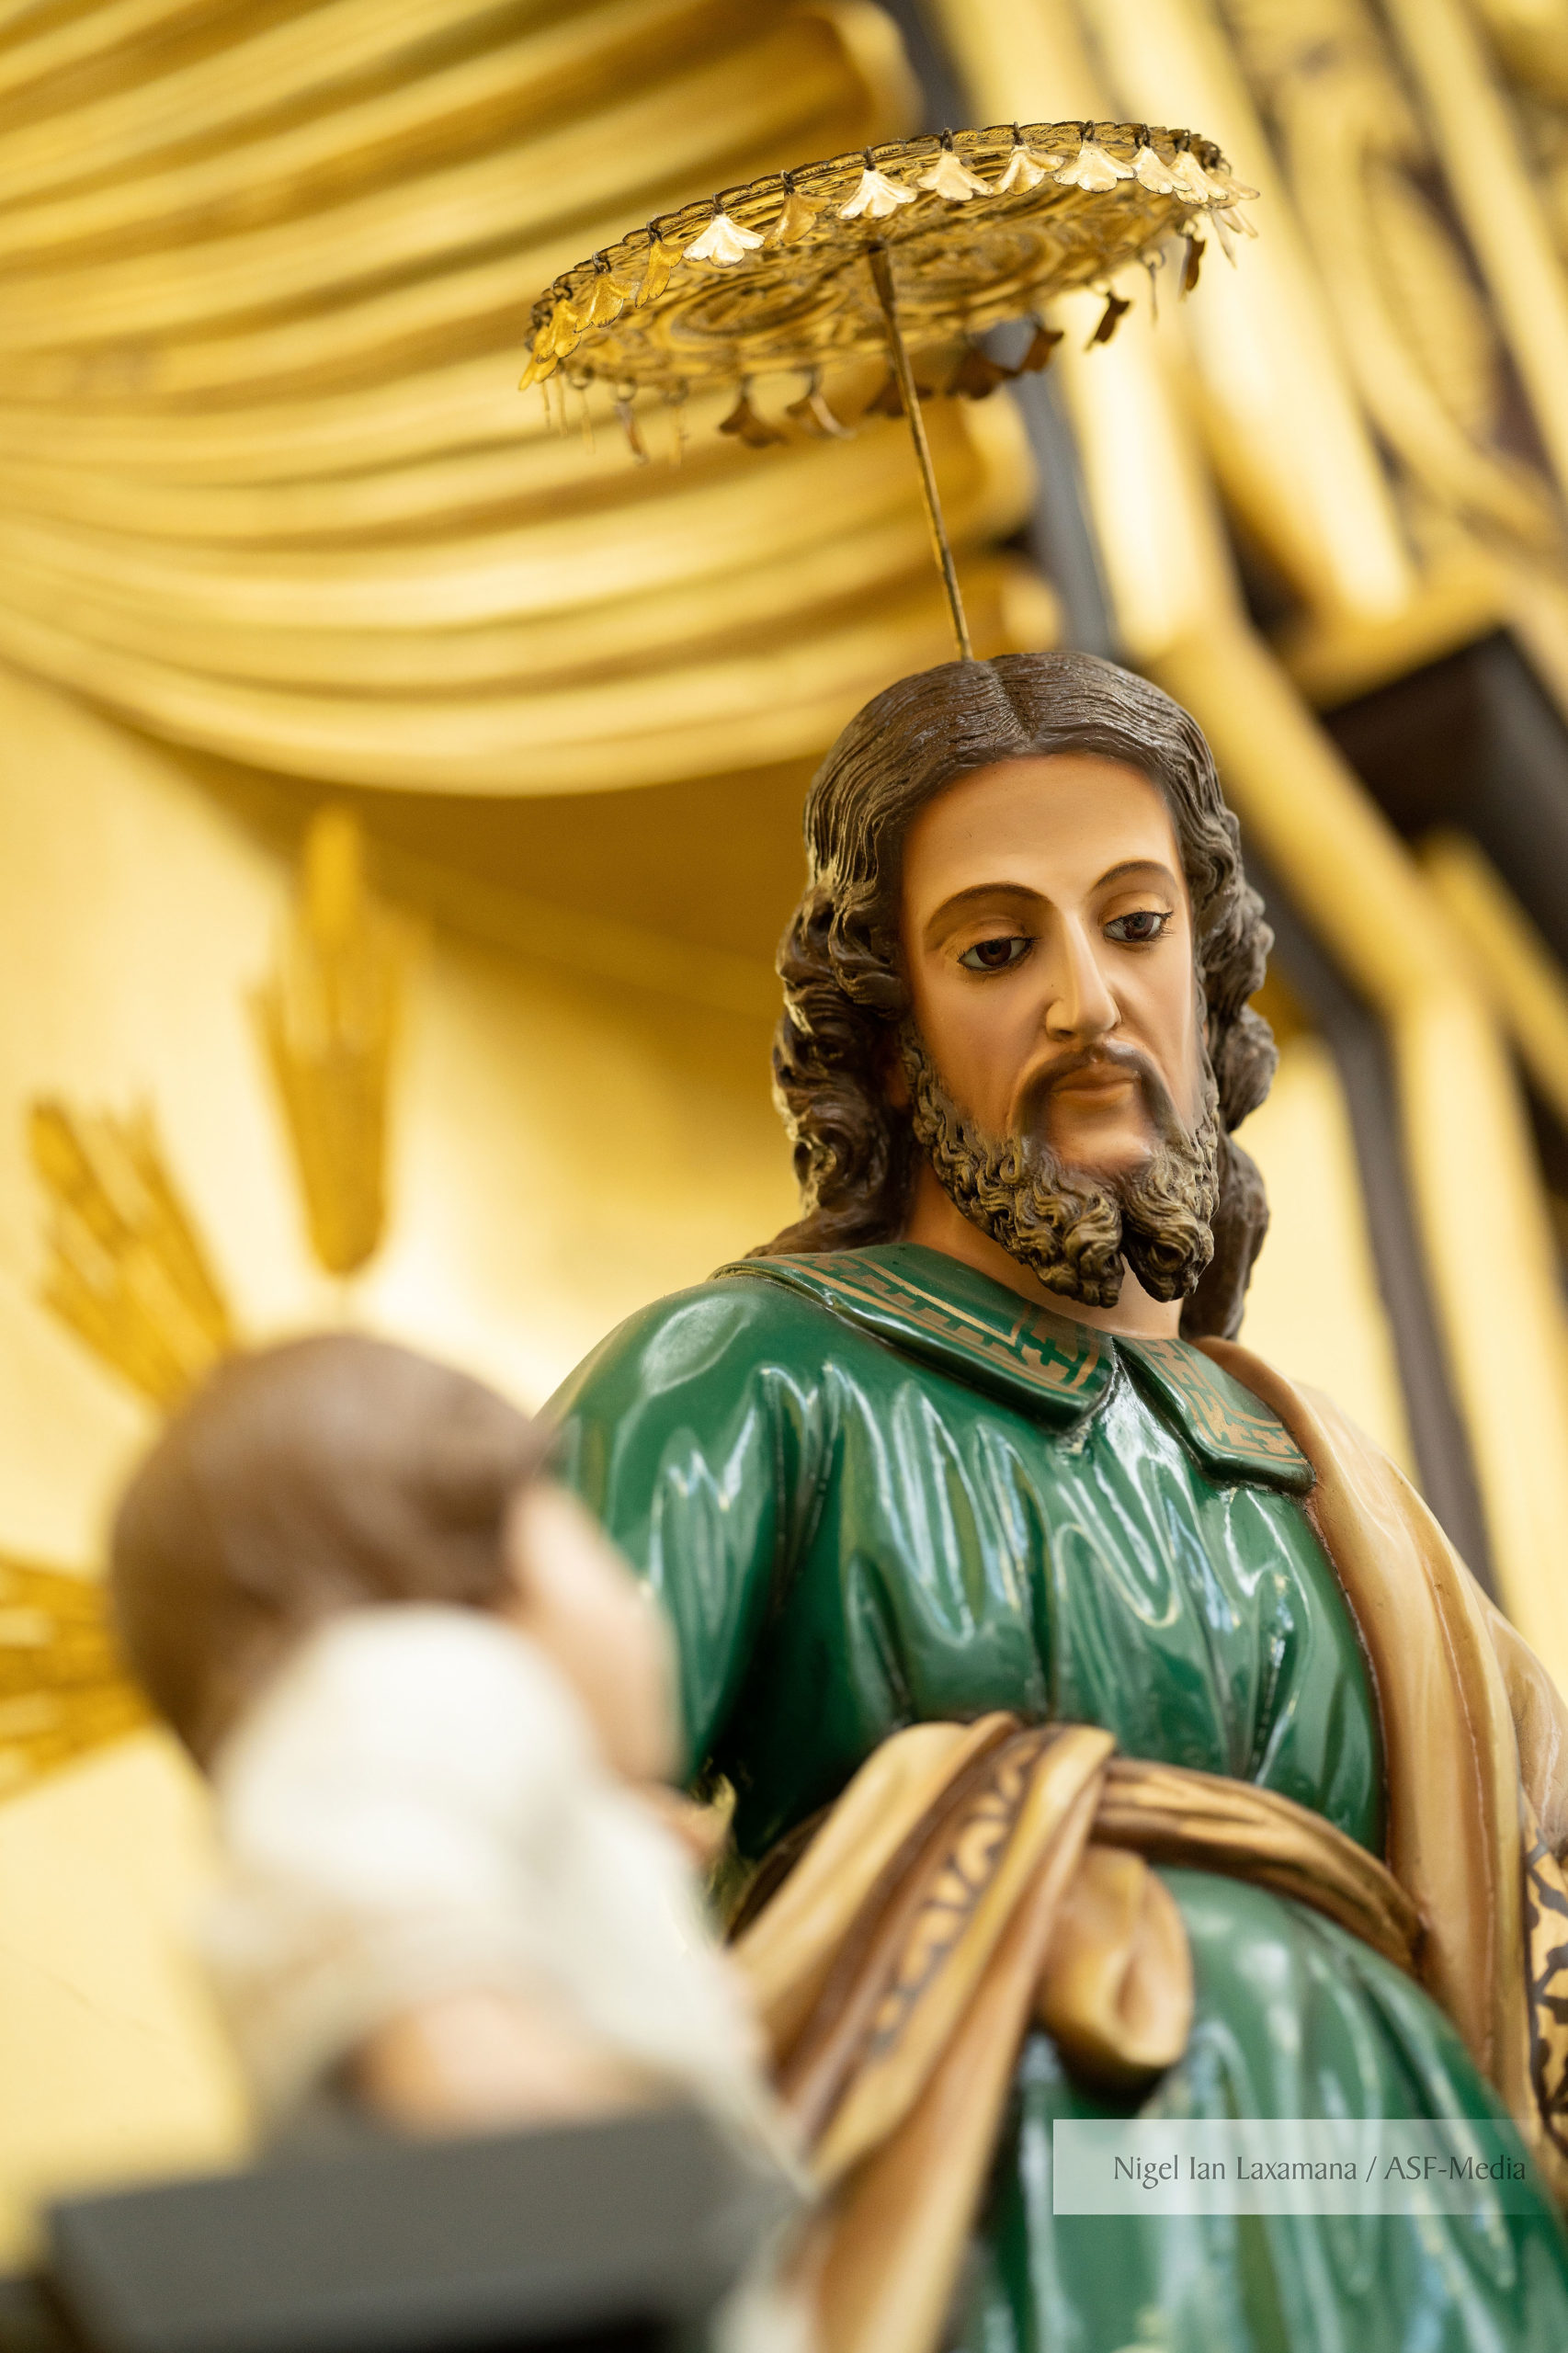 The image of St. Joseph at Floridablanca, Pampanga. PHOTO: NIGEL IAN LAXAMANA / ASF-MEDIA